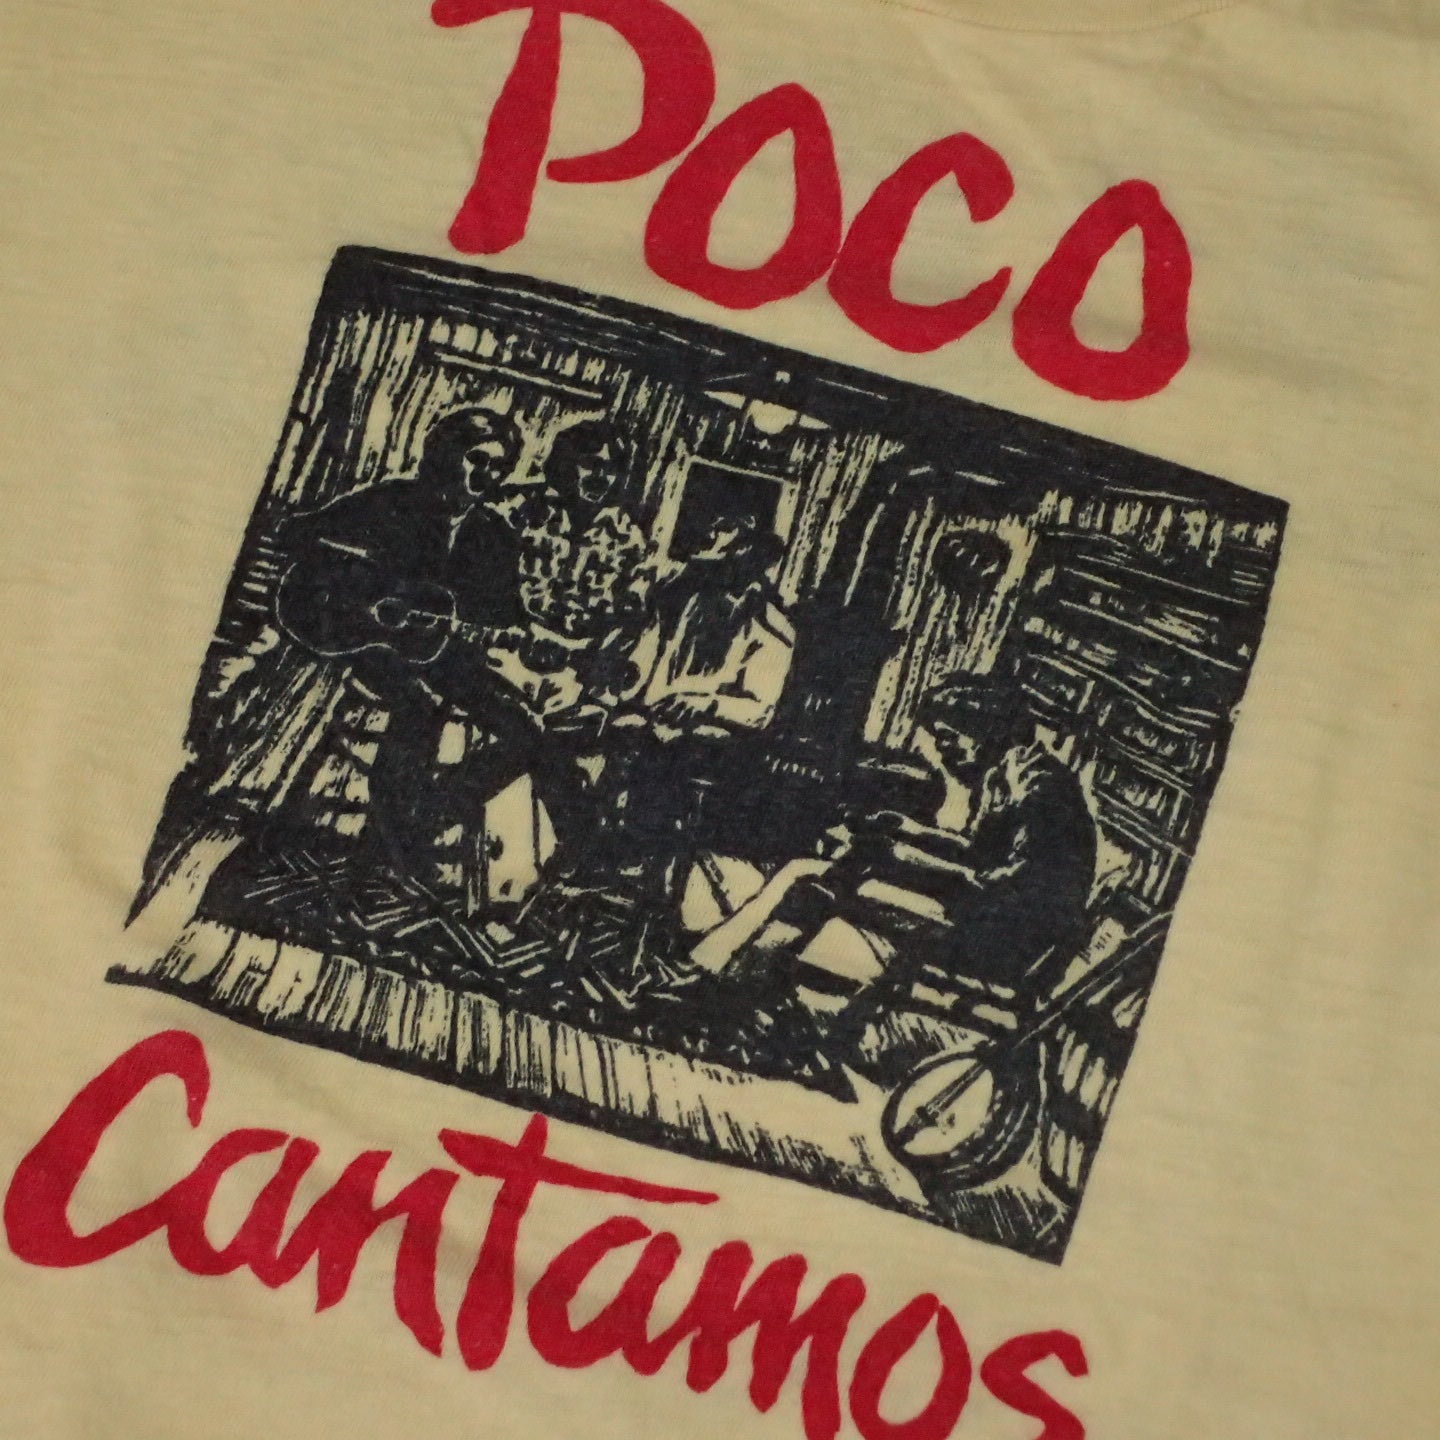 70s Poco T-shirt "Cantamos Tee"